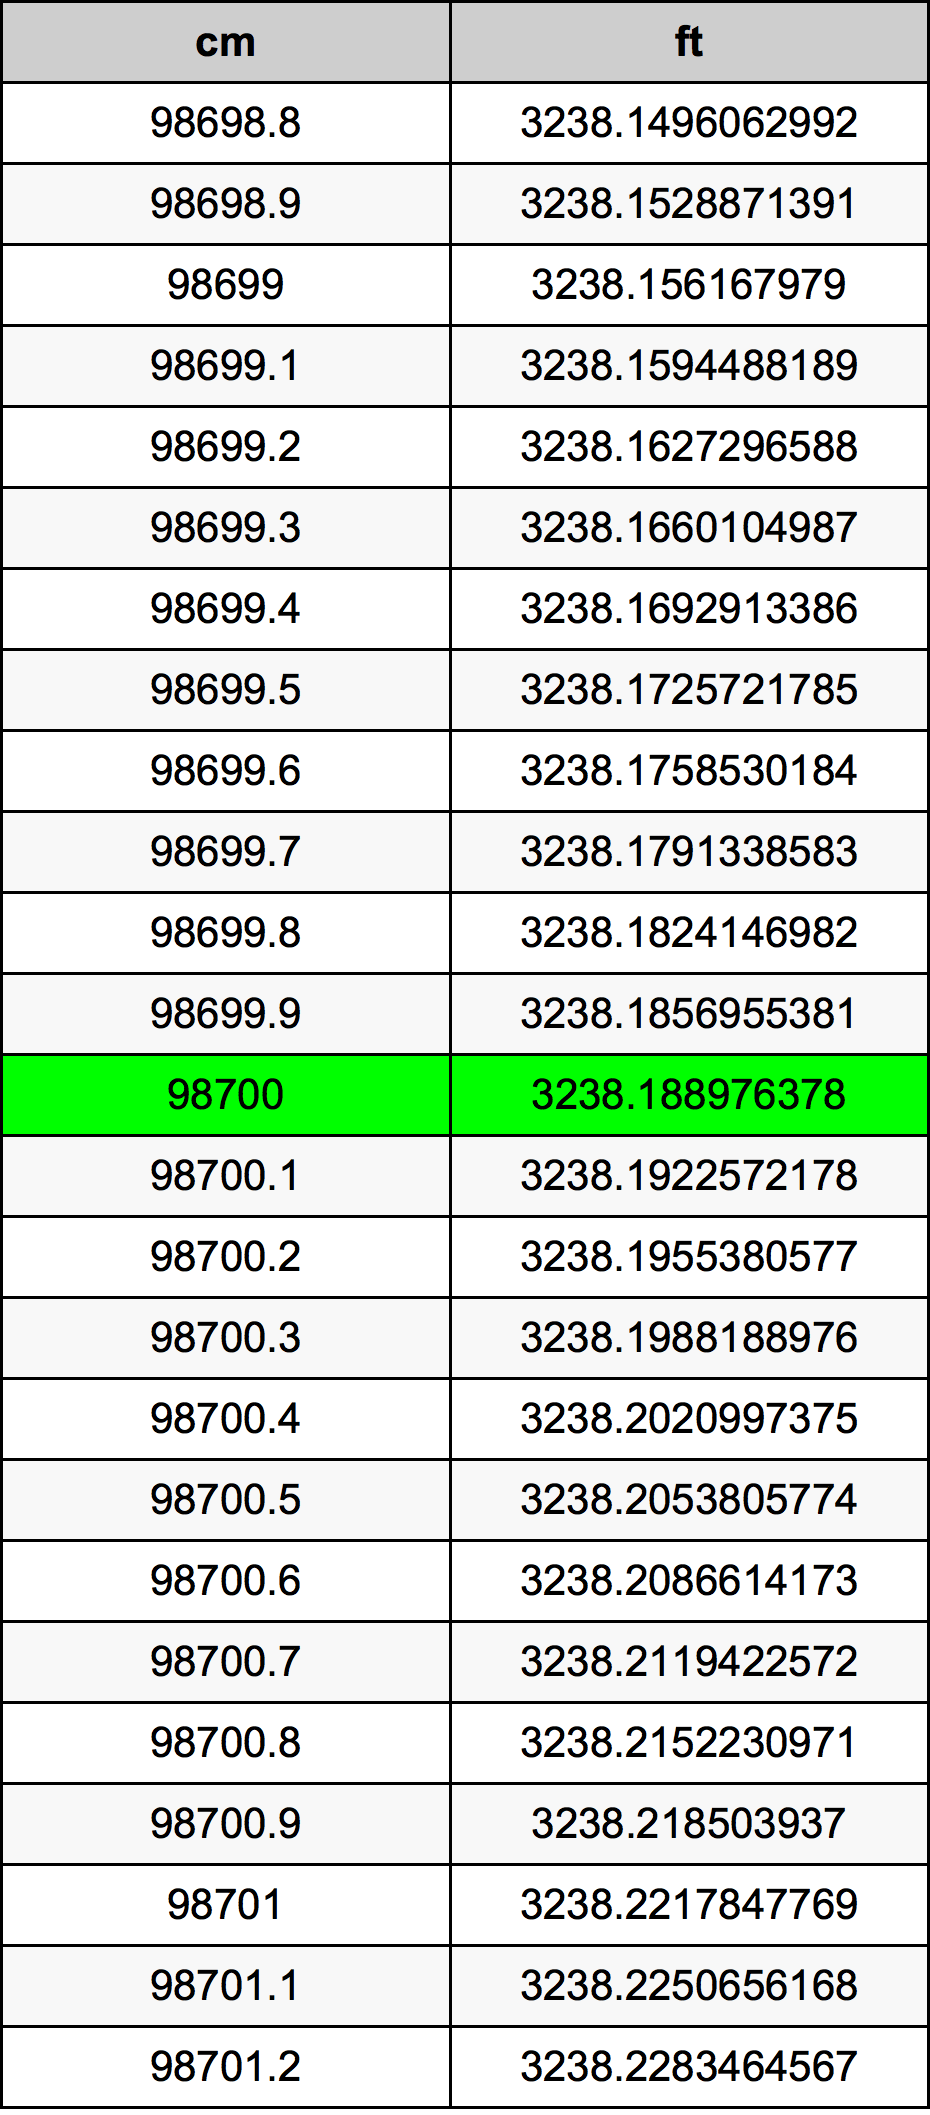 98700 ċentimetru konverżjoni tabella